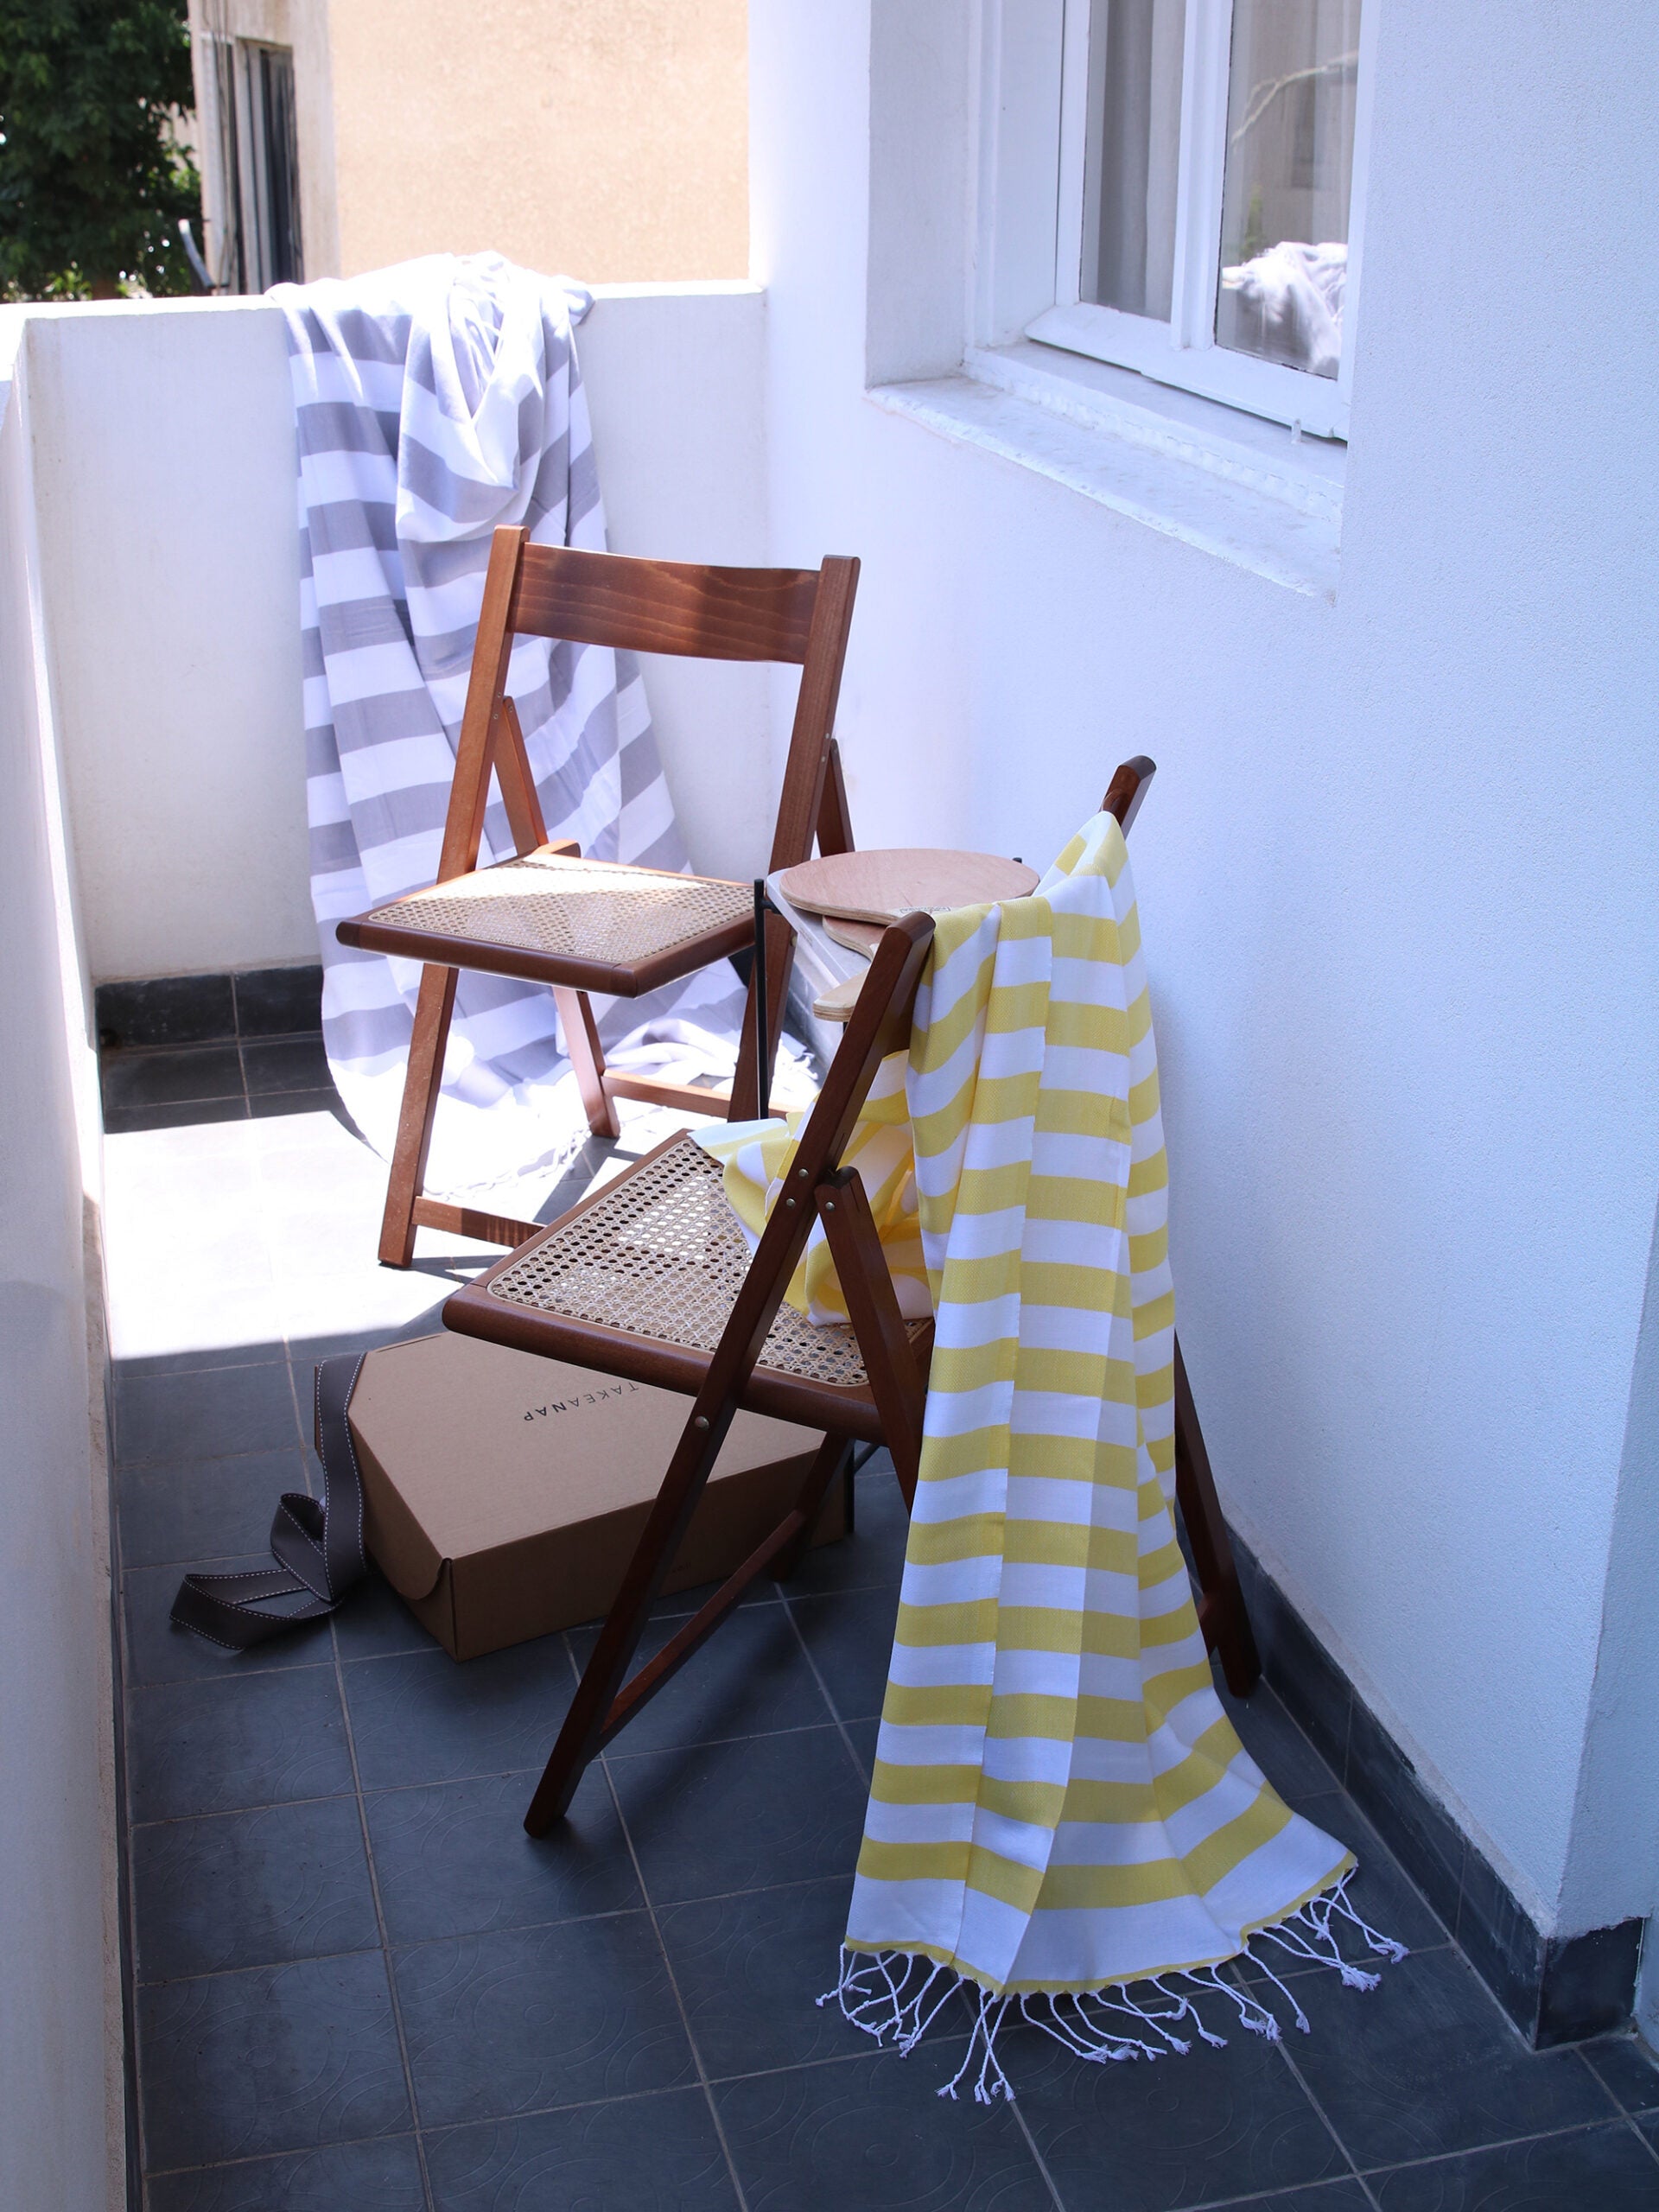 מרפסת בית עם שני כיסאות עץ שעל קיר המרפסת מונחת שמיכת חוף אפורה ועל כיסא מונחת שמיכת חוף צהובה